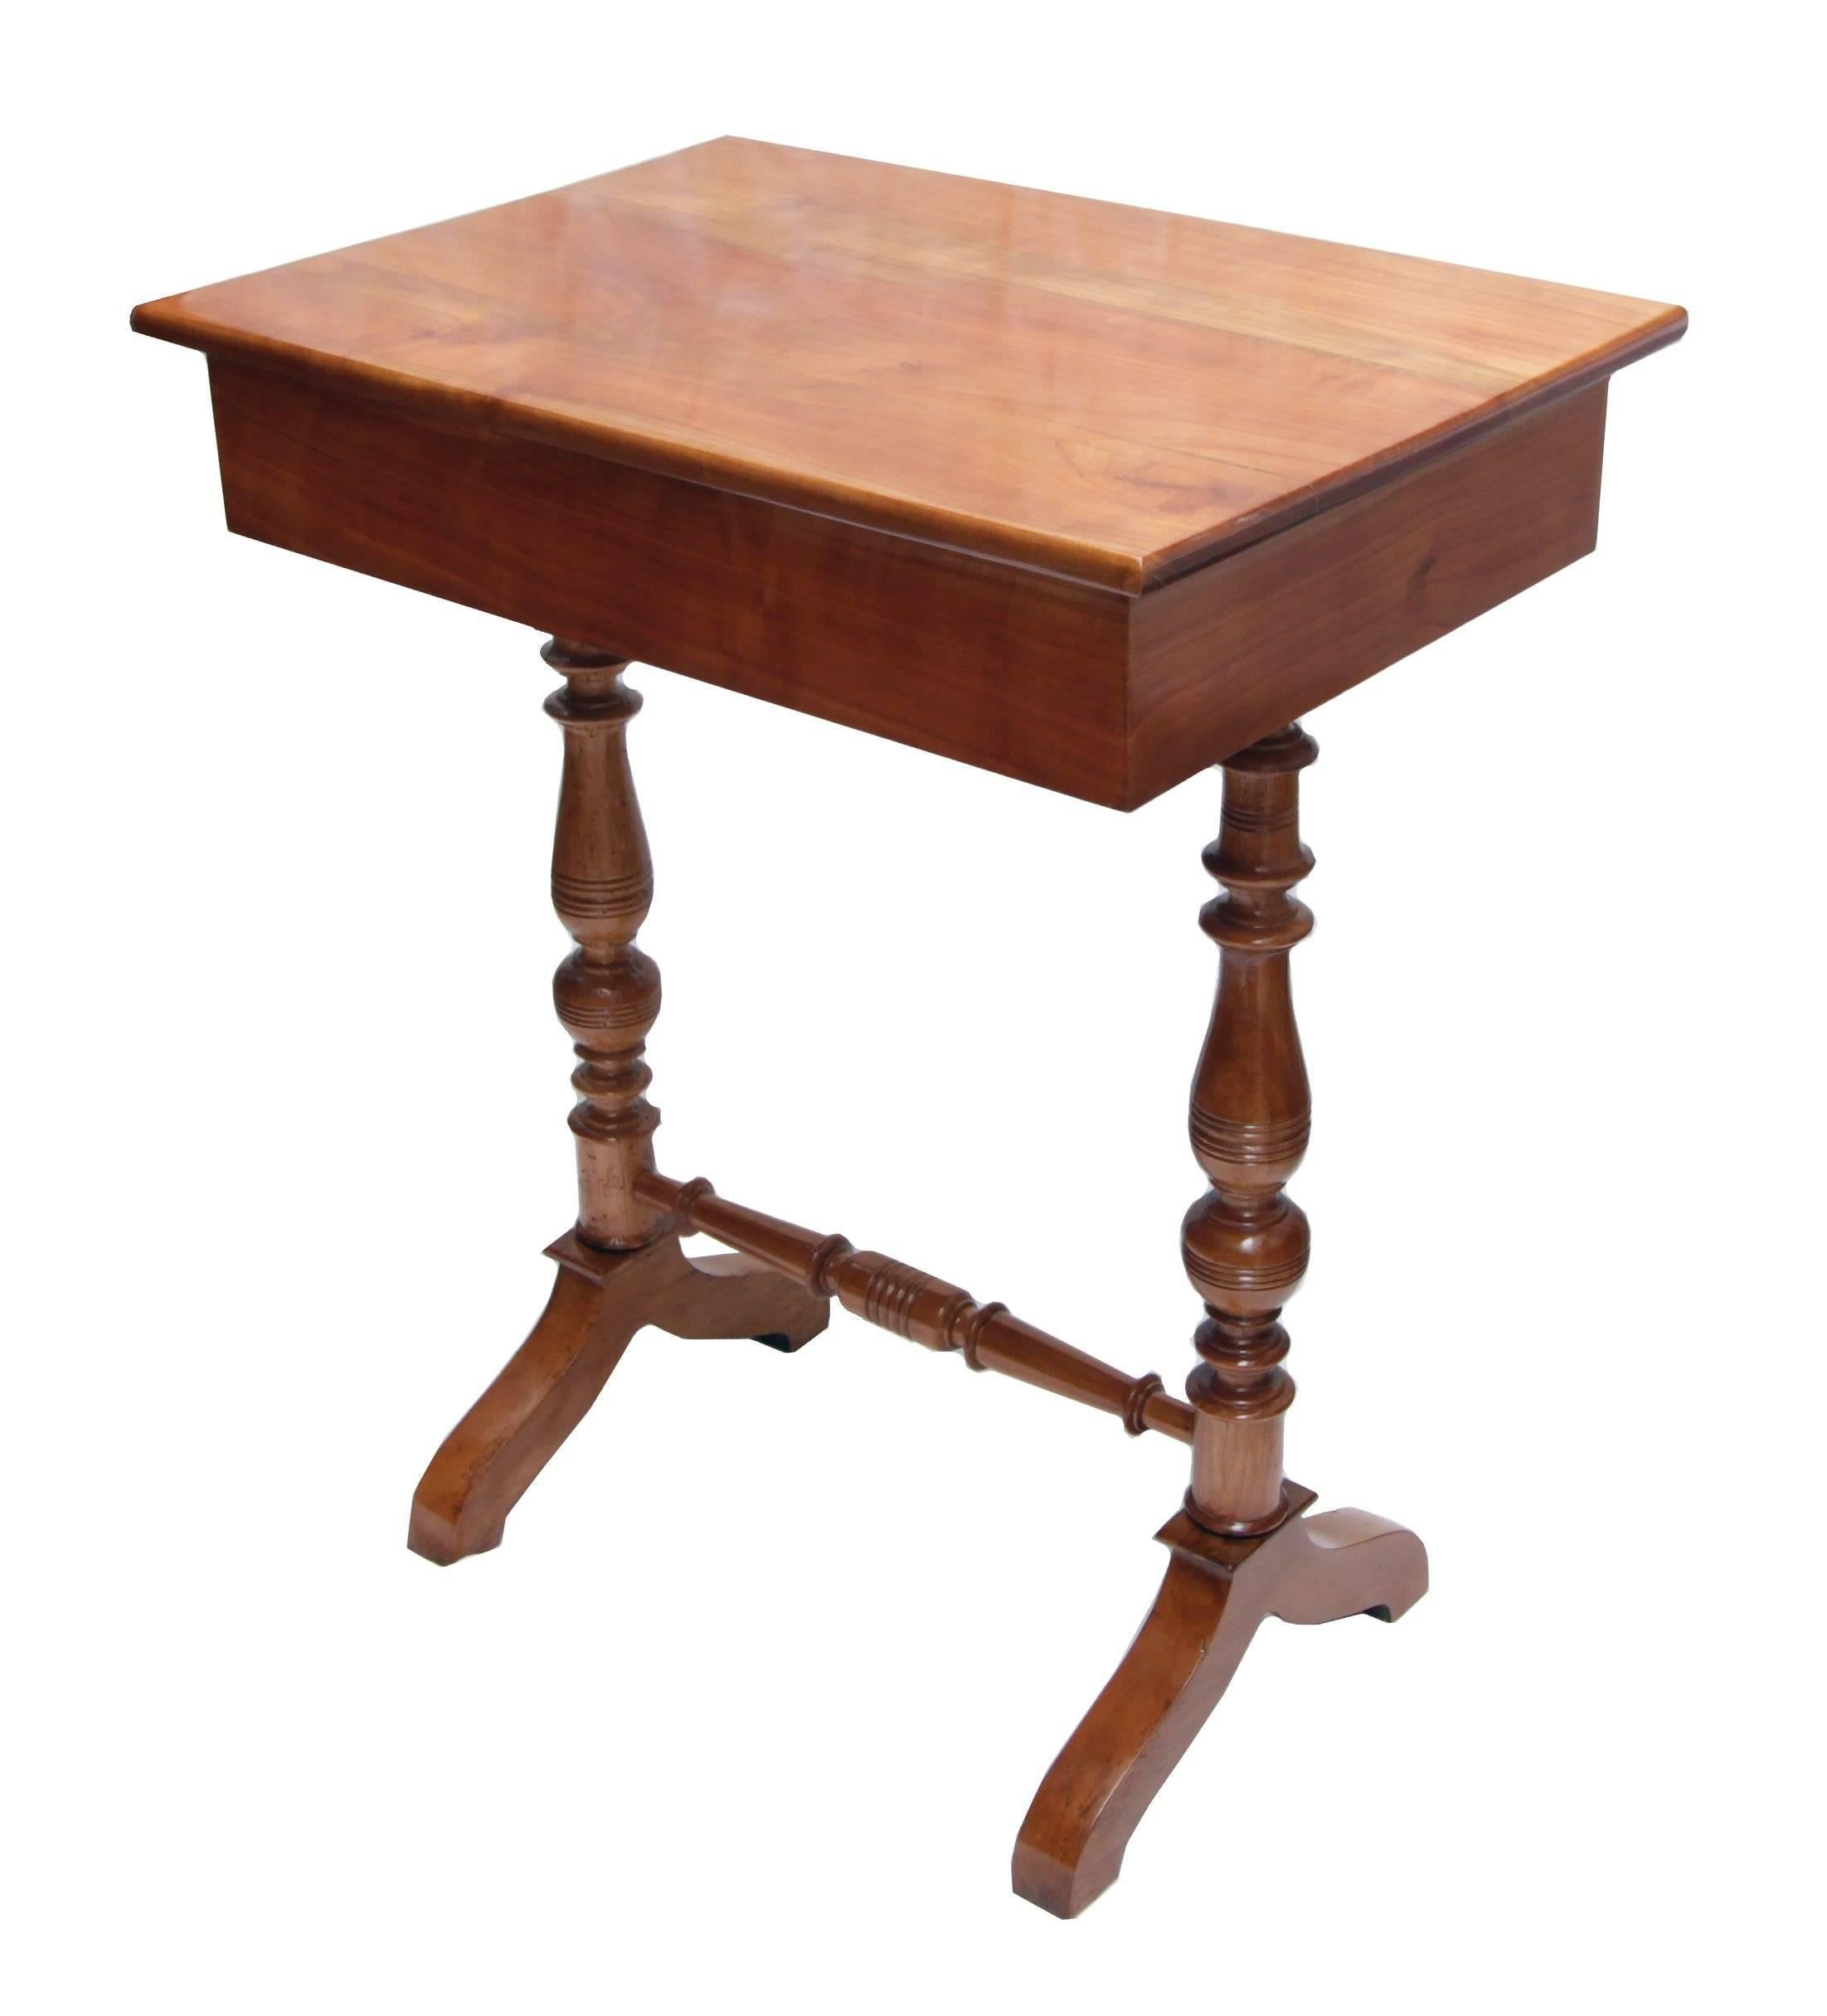 Sehr schöner Näh- und Beistelltisch aus massivem Kirschbaumholz. Der Tisch stammt aus der Zeit des späten Biedermeier/Historismus, genauer gesagt aus der Zeit von ca. 1850-1880. Das Innere (Rückseite, Seiten und Boden) der Schublade ist wie üblich